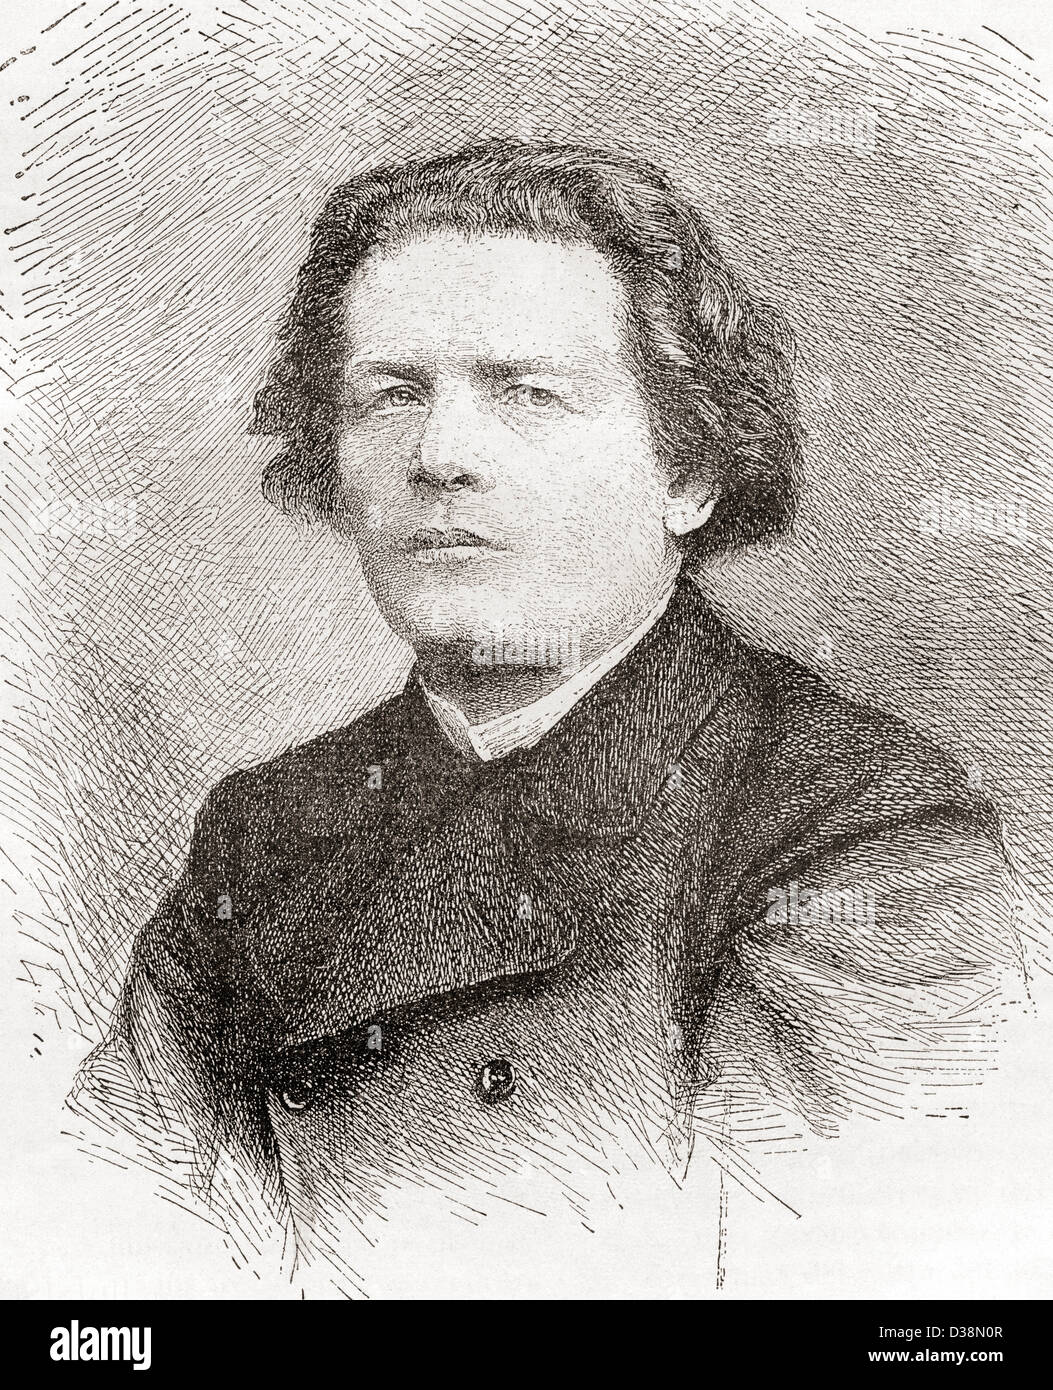 Rémy Anton Rubinstein, 1829 - 1894. Pianiste, compositeur et chef d'orchestre. Banque D'Images